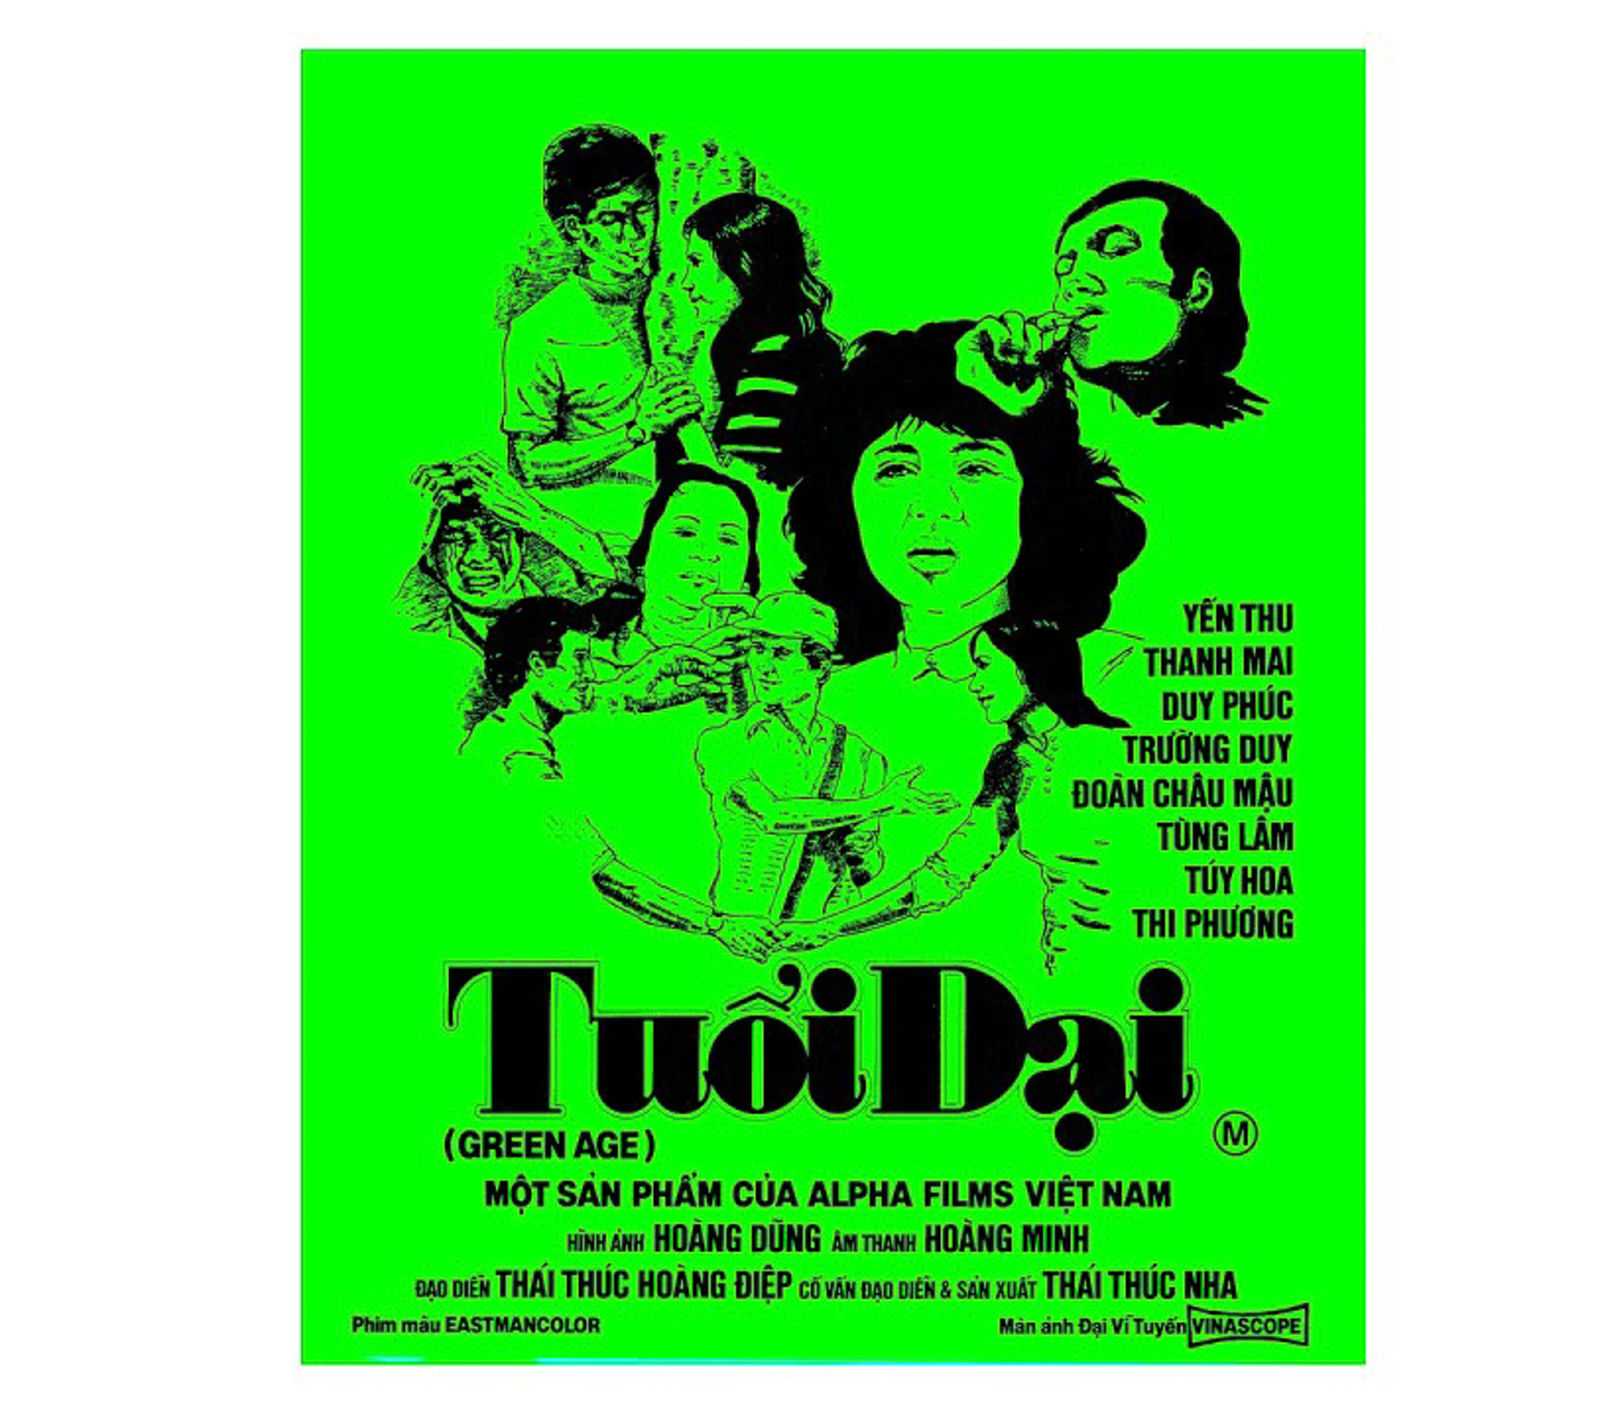 Bộ phim Việt sản xuất năm 1974 ra mắt khán giả online sau nhiều thập kỷ 'đắp chiếu' Thứ tư, 05 Tháng 5 2021. Viết bởi Adam Szudrich.